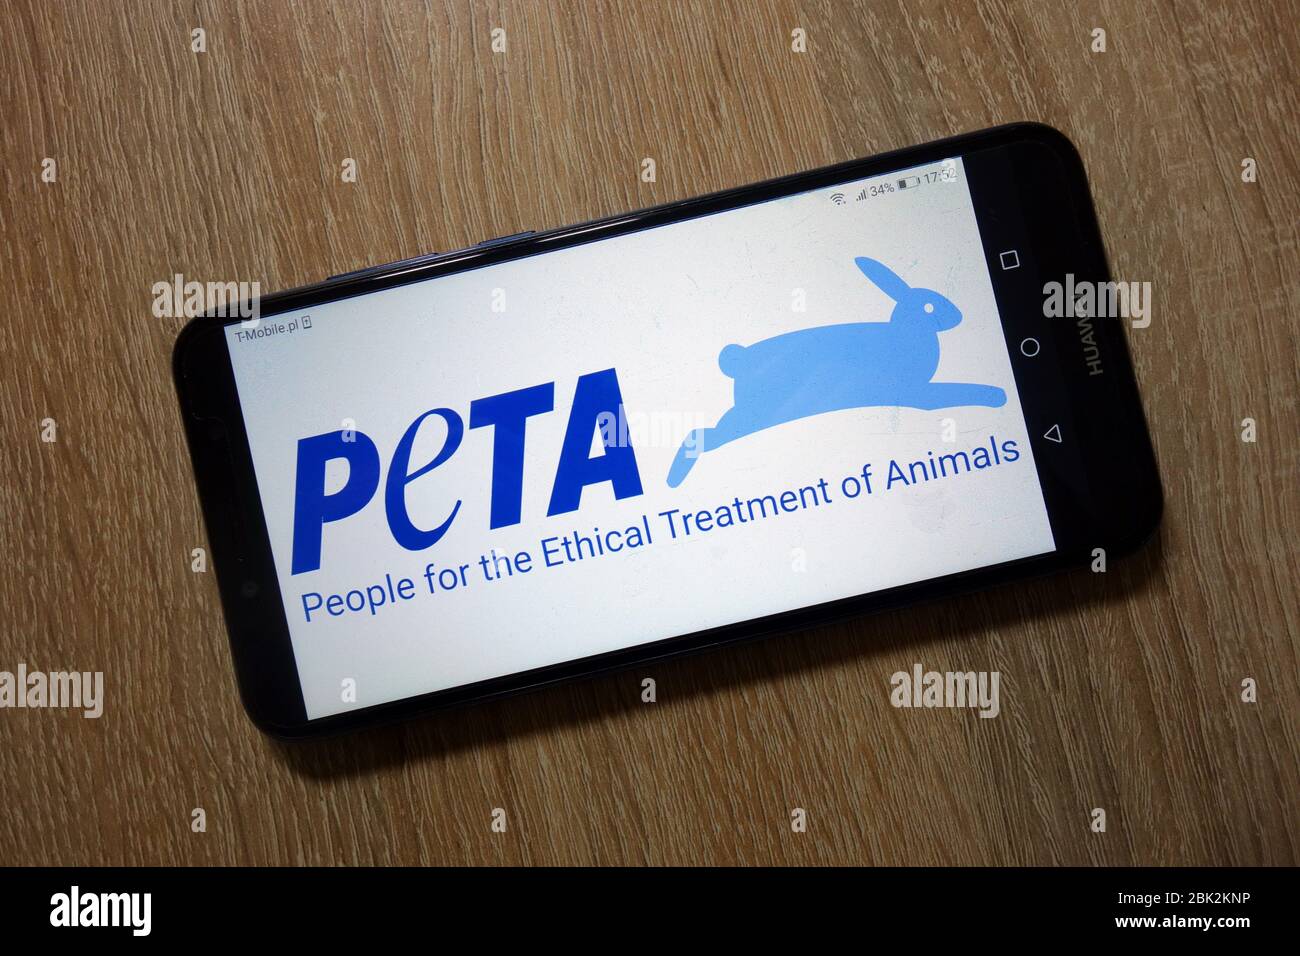 Persone per il trattamento etico degli animali (PETA) logo dell'organizzazione visualizzato sullo smartphone Foto Stock